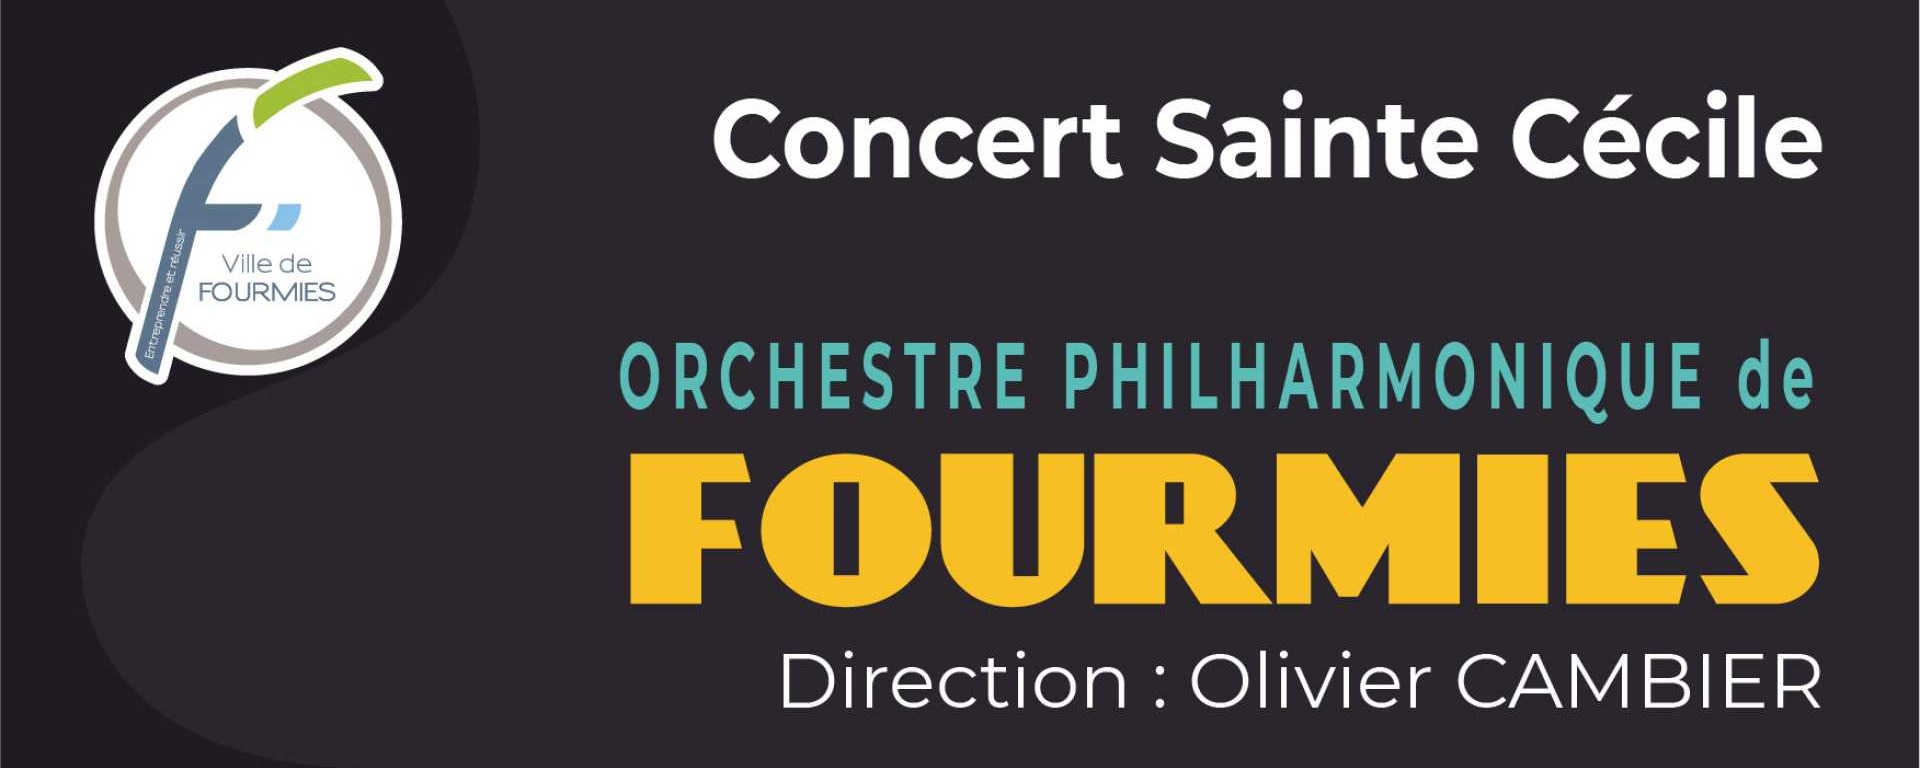 Orchestre Philharmonique de Fourmies